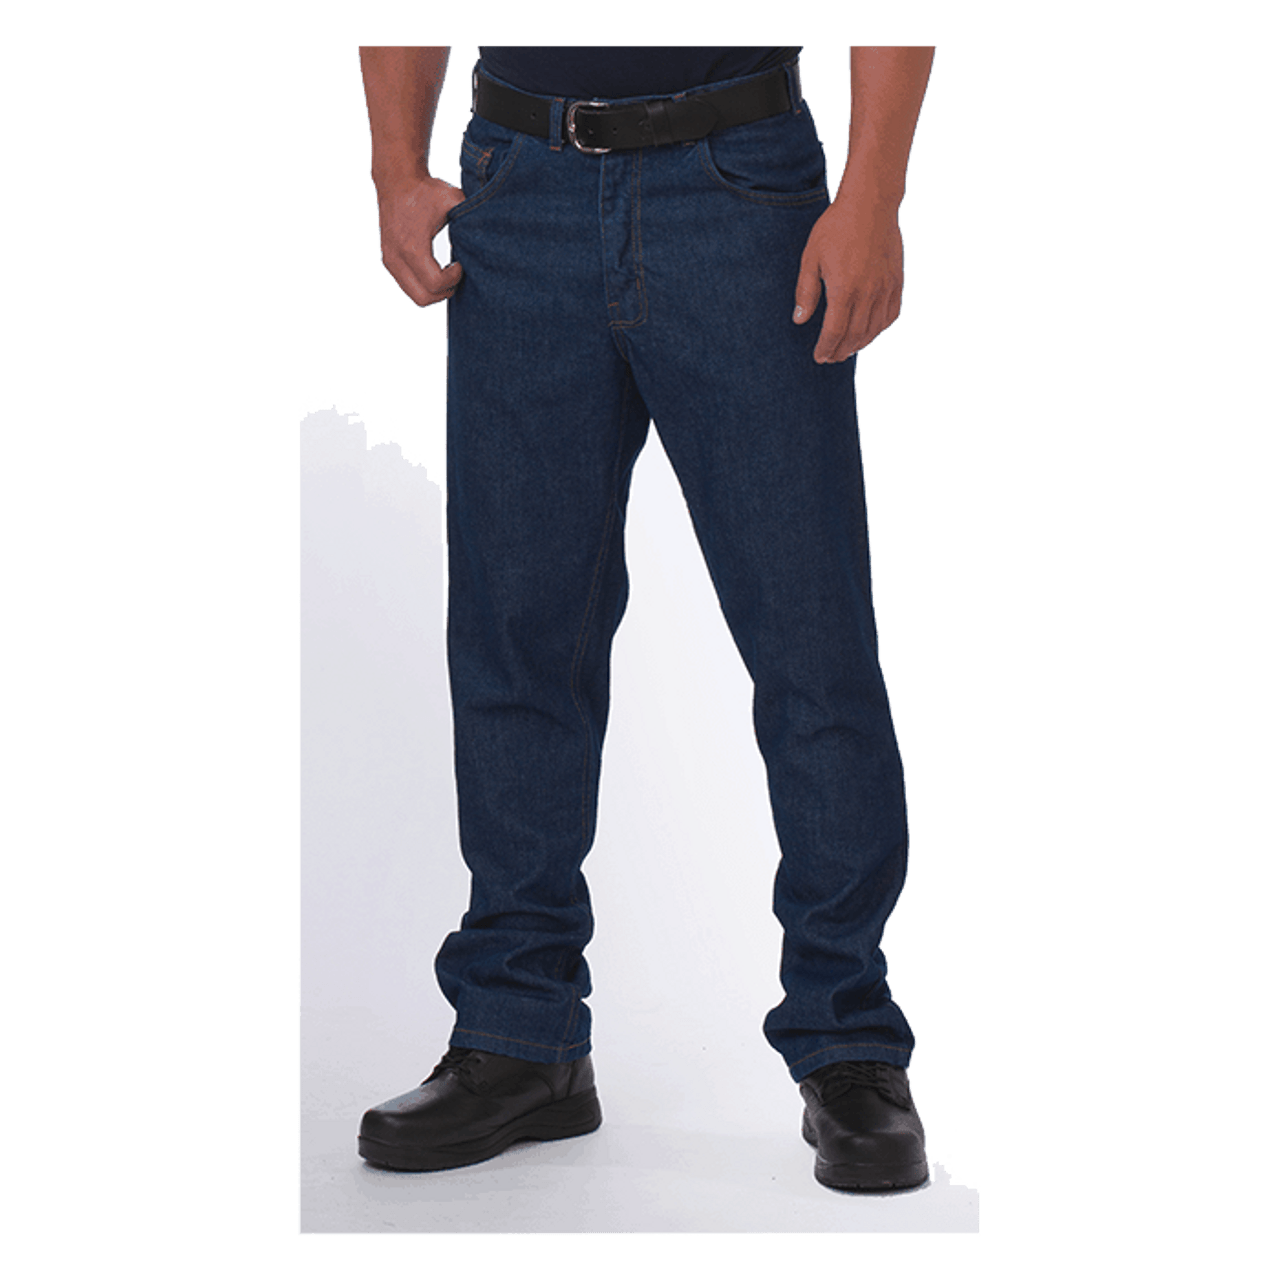 Relaxed Fit 5-Pocket Denim Jeans For Men